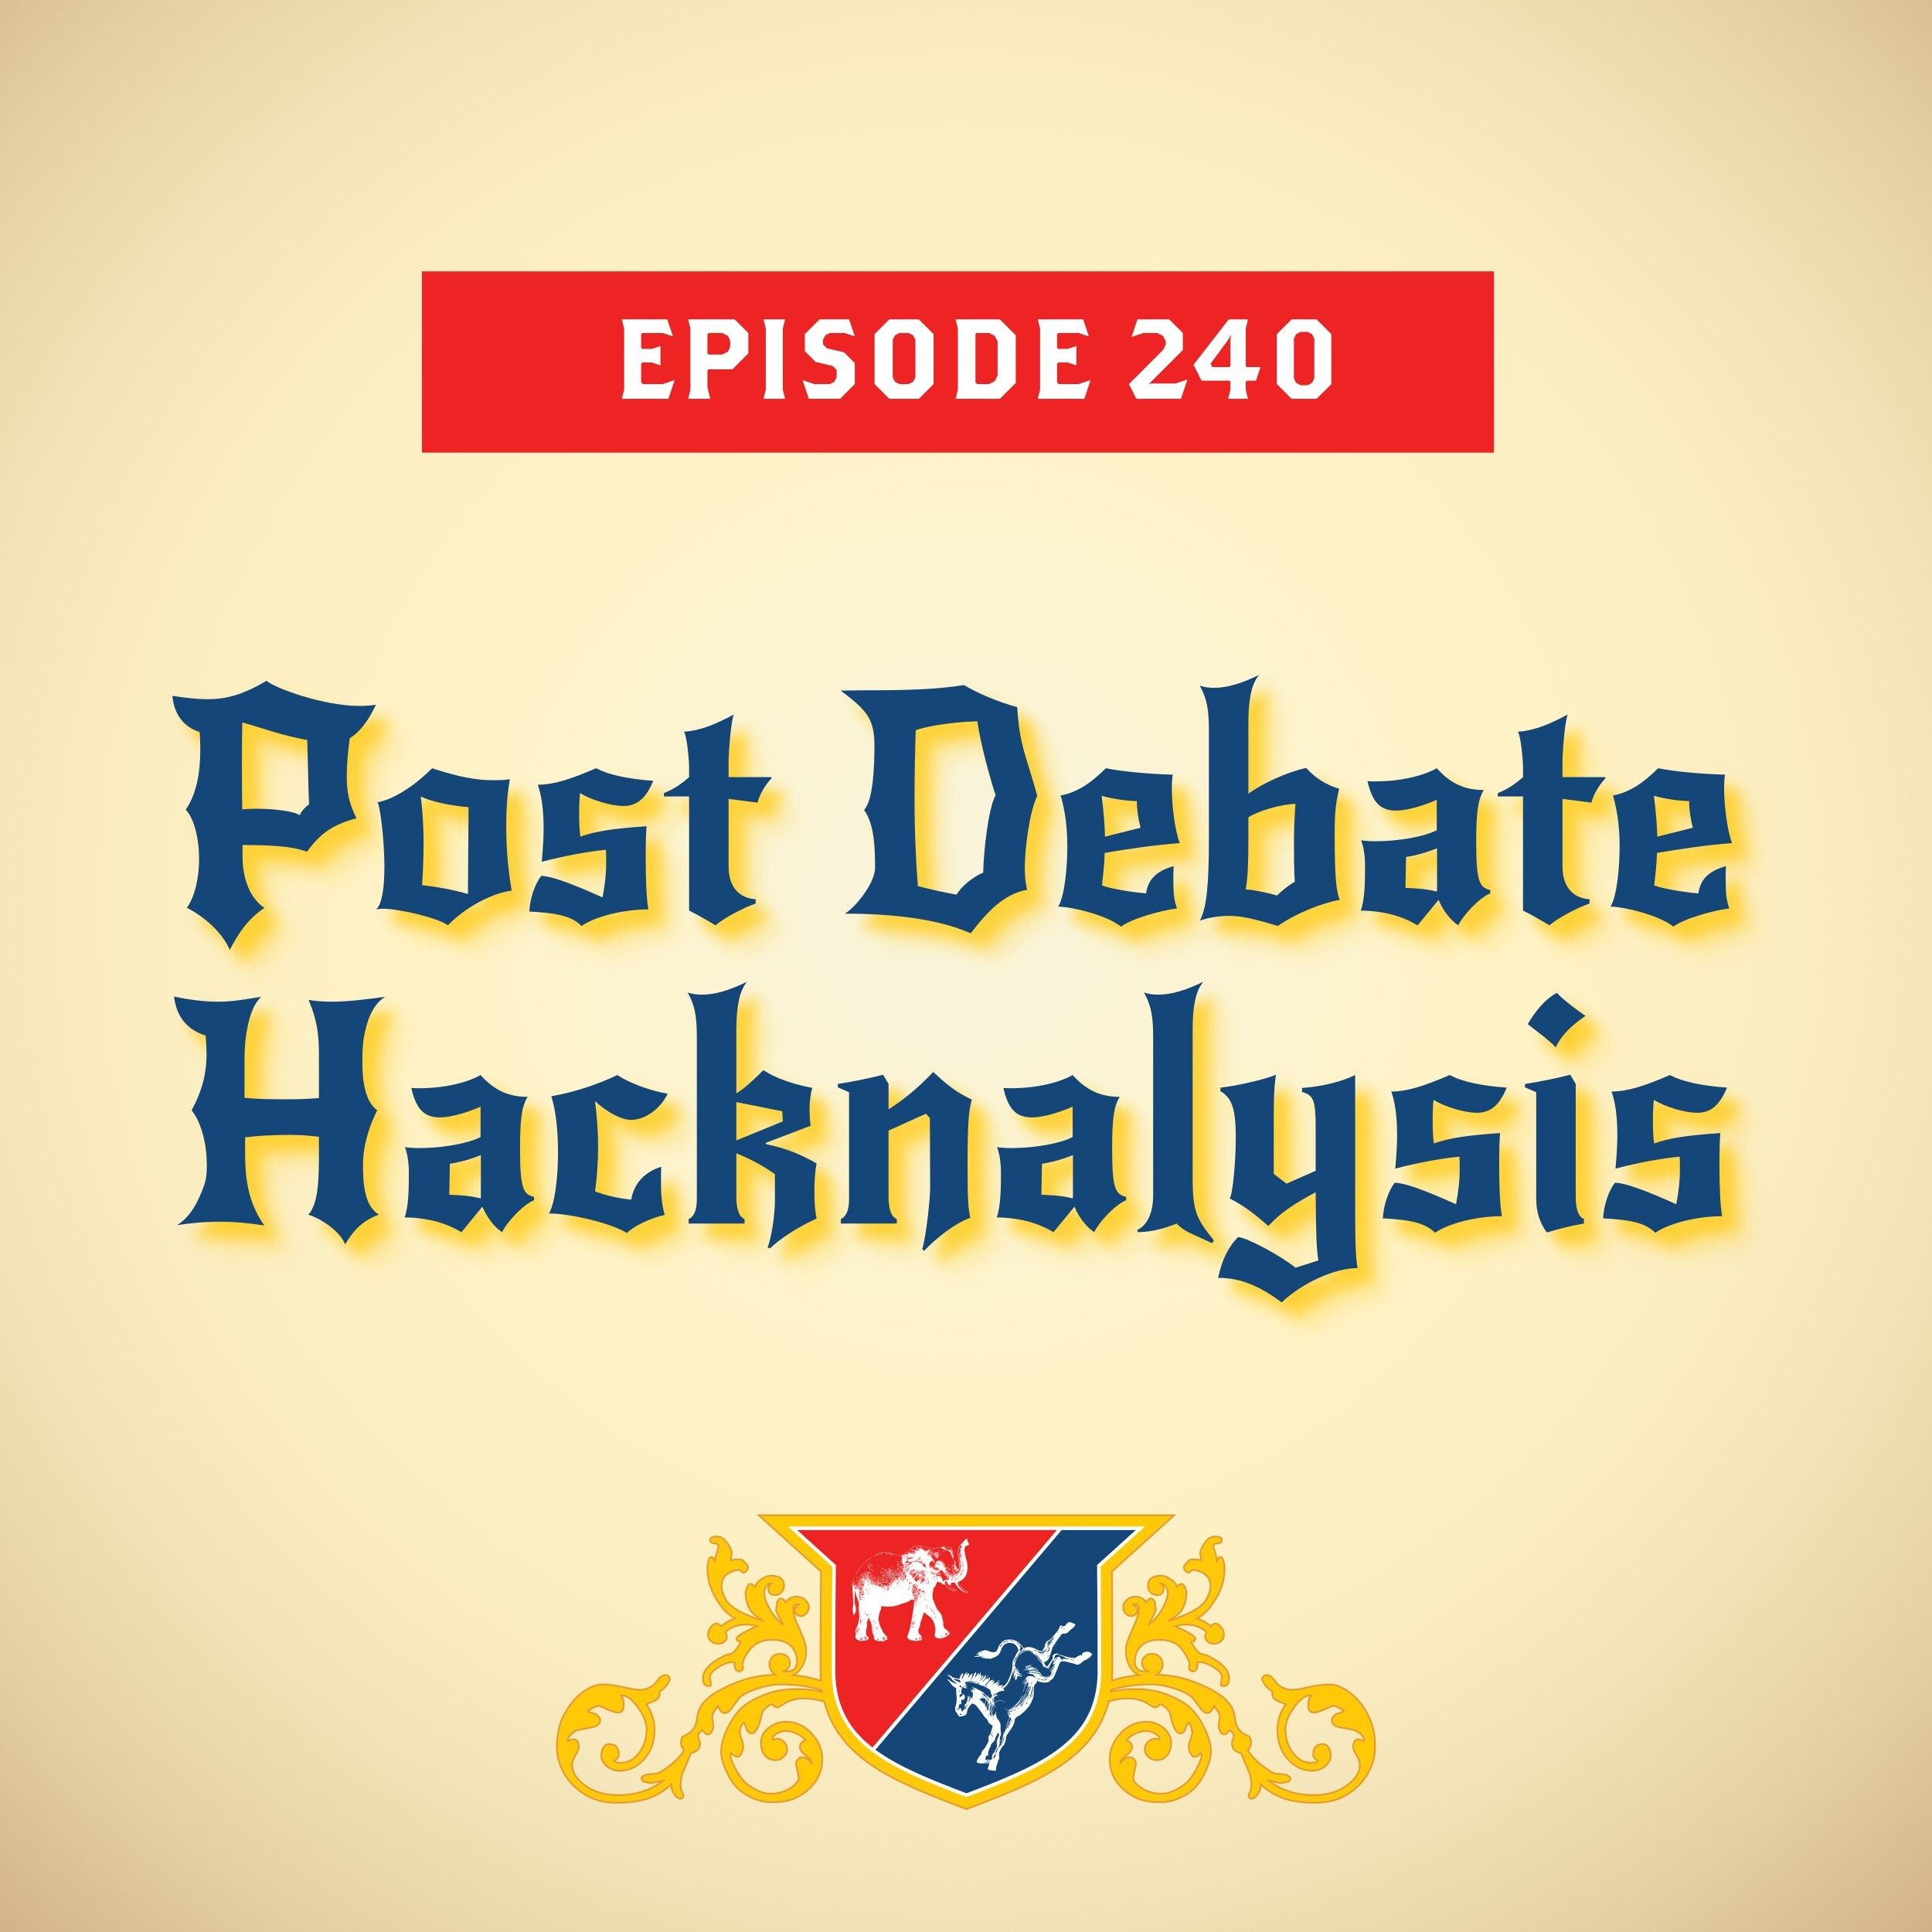 Post Debate Hacknalysis